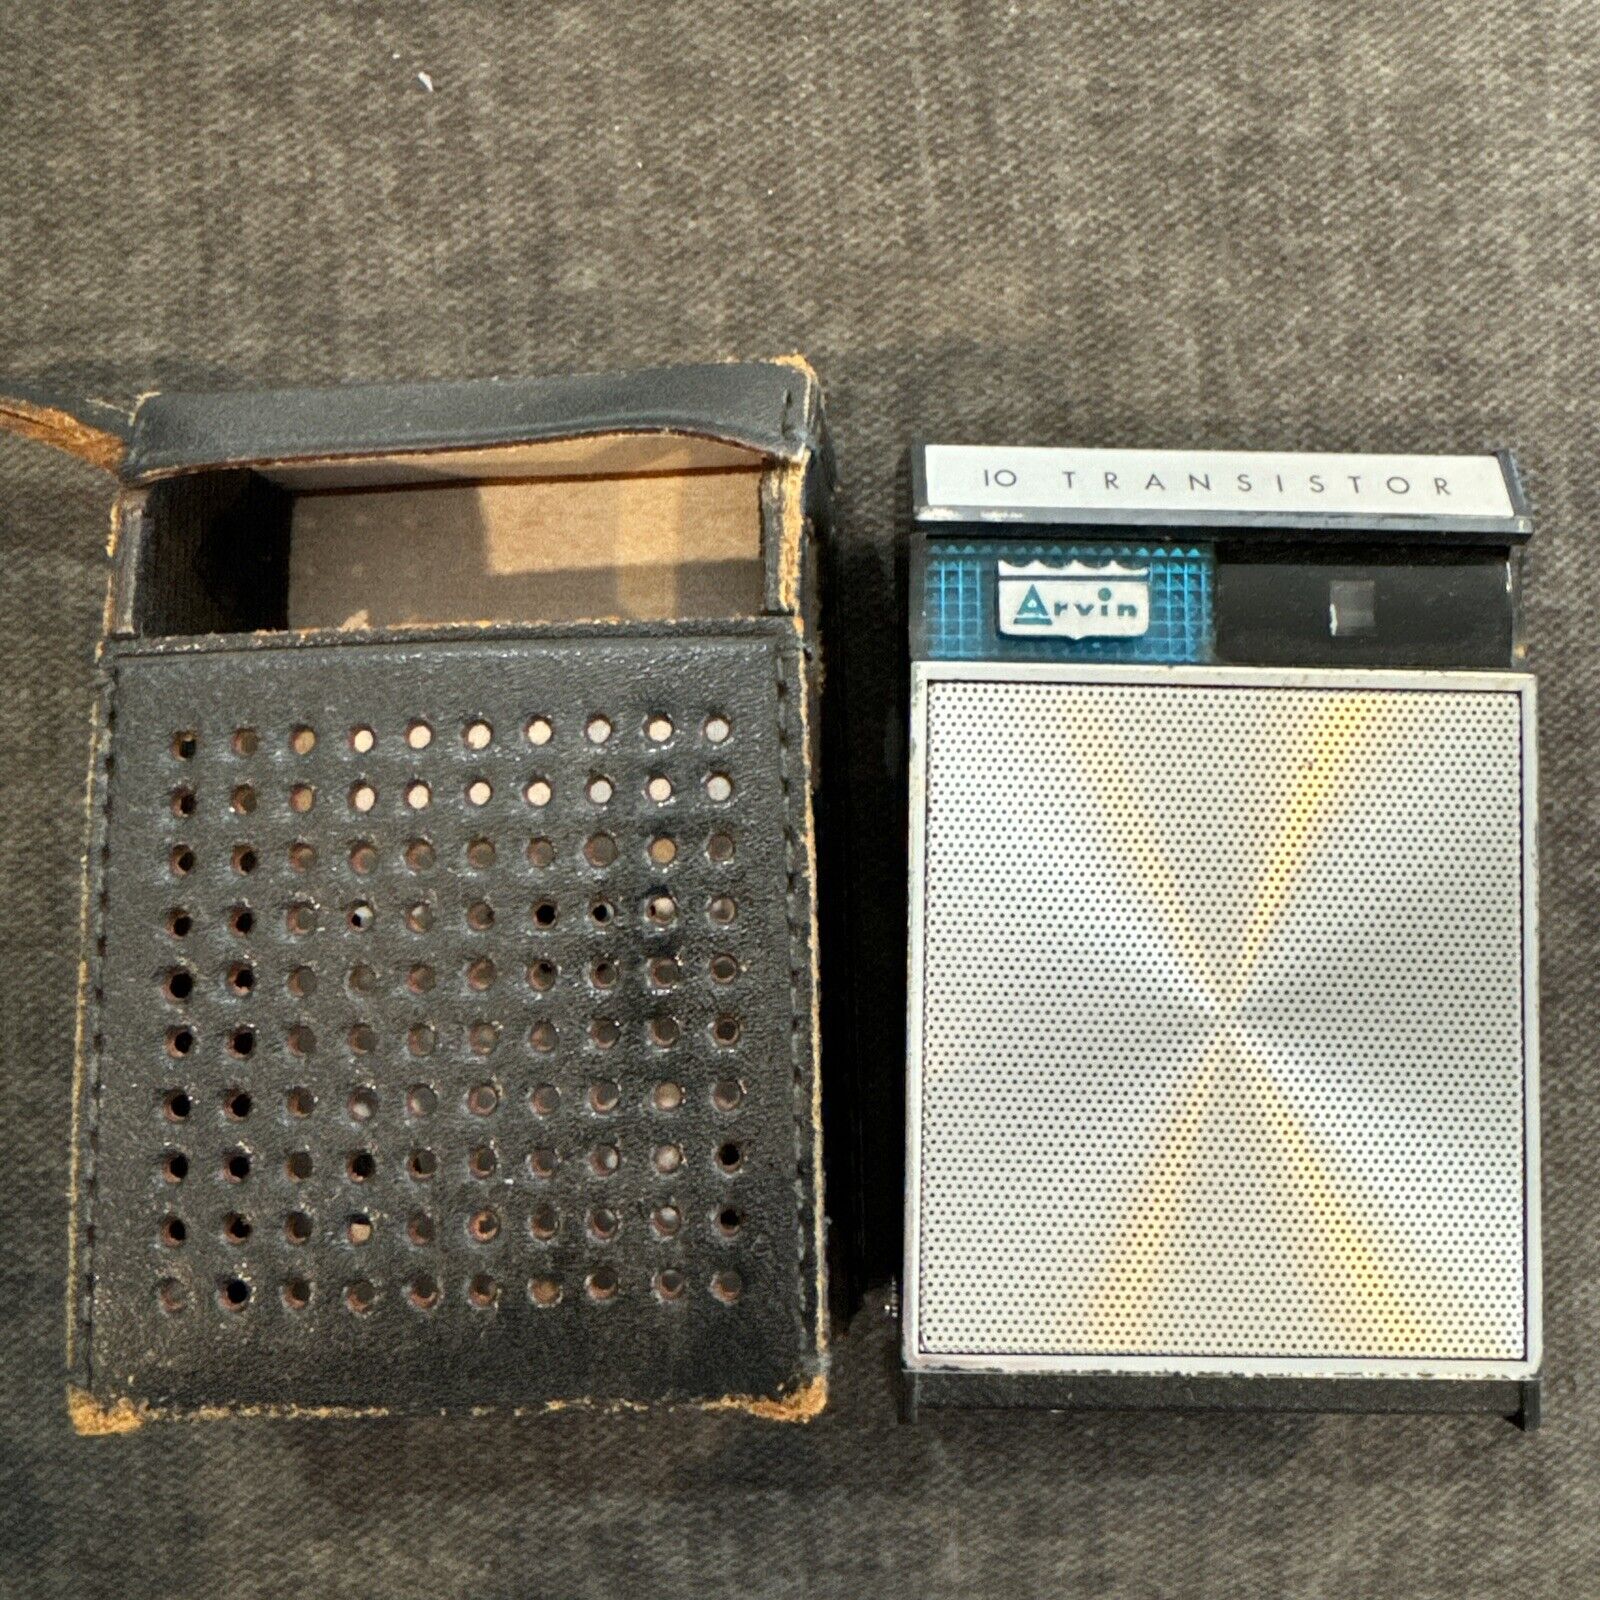 Arvin 10 Vintage Pocket Transistor Radio w/ Leather Case - Works